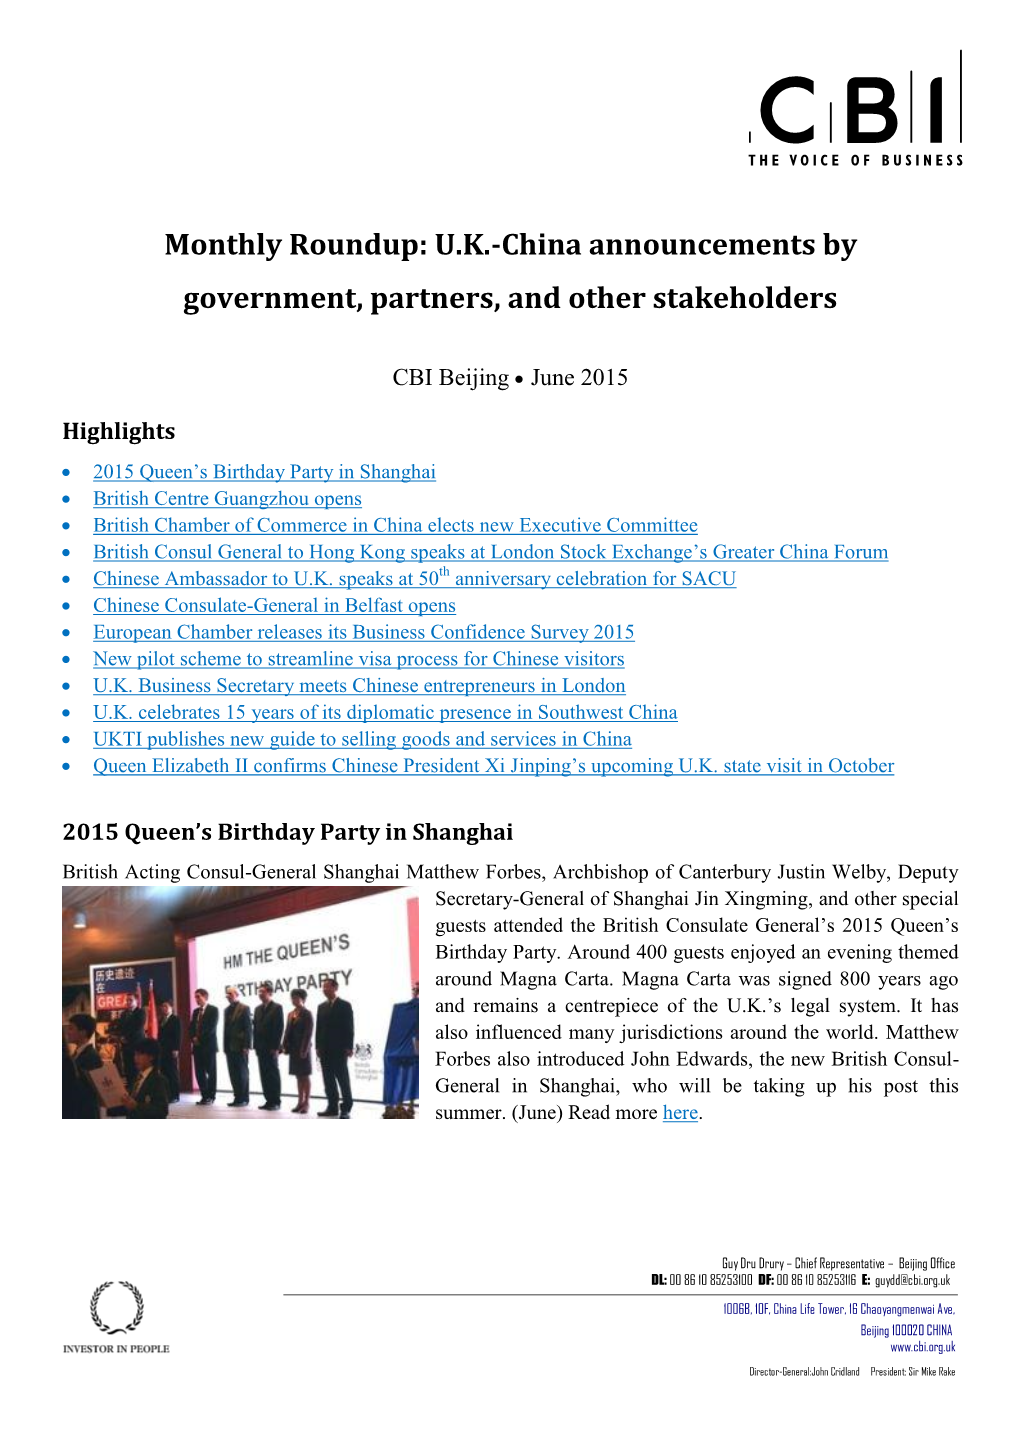 Download CBI China, U.K.-China Monthly Roundup, June 2015